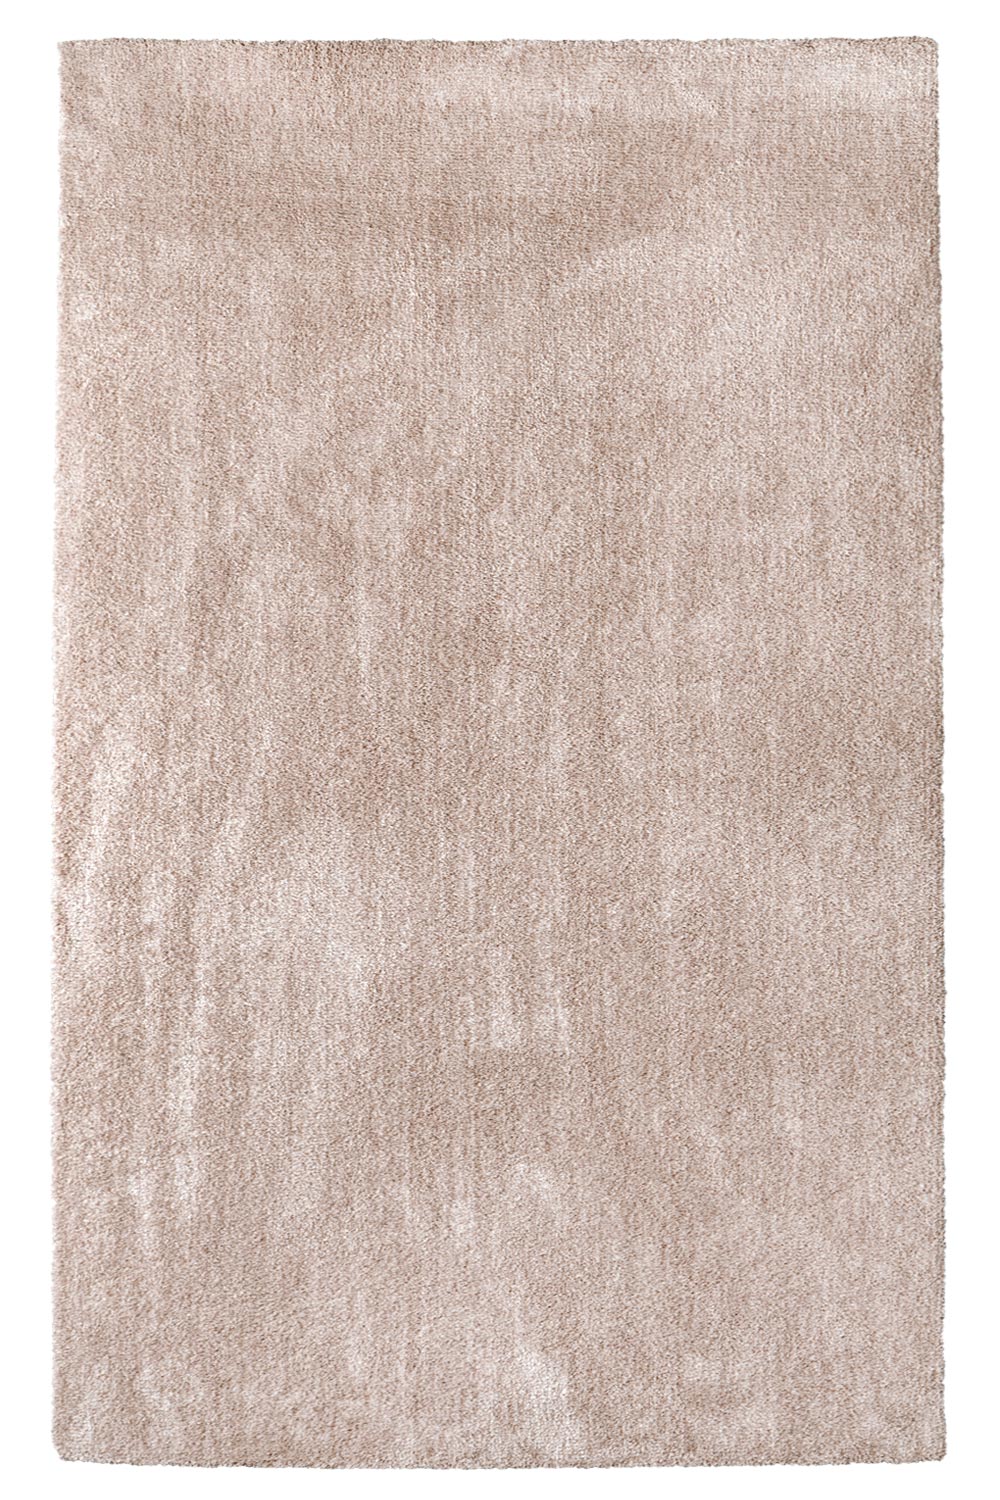 Kusový koberec Labrador 71351 026 Nude Mix 140x200 cm